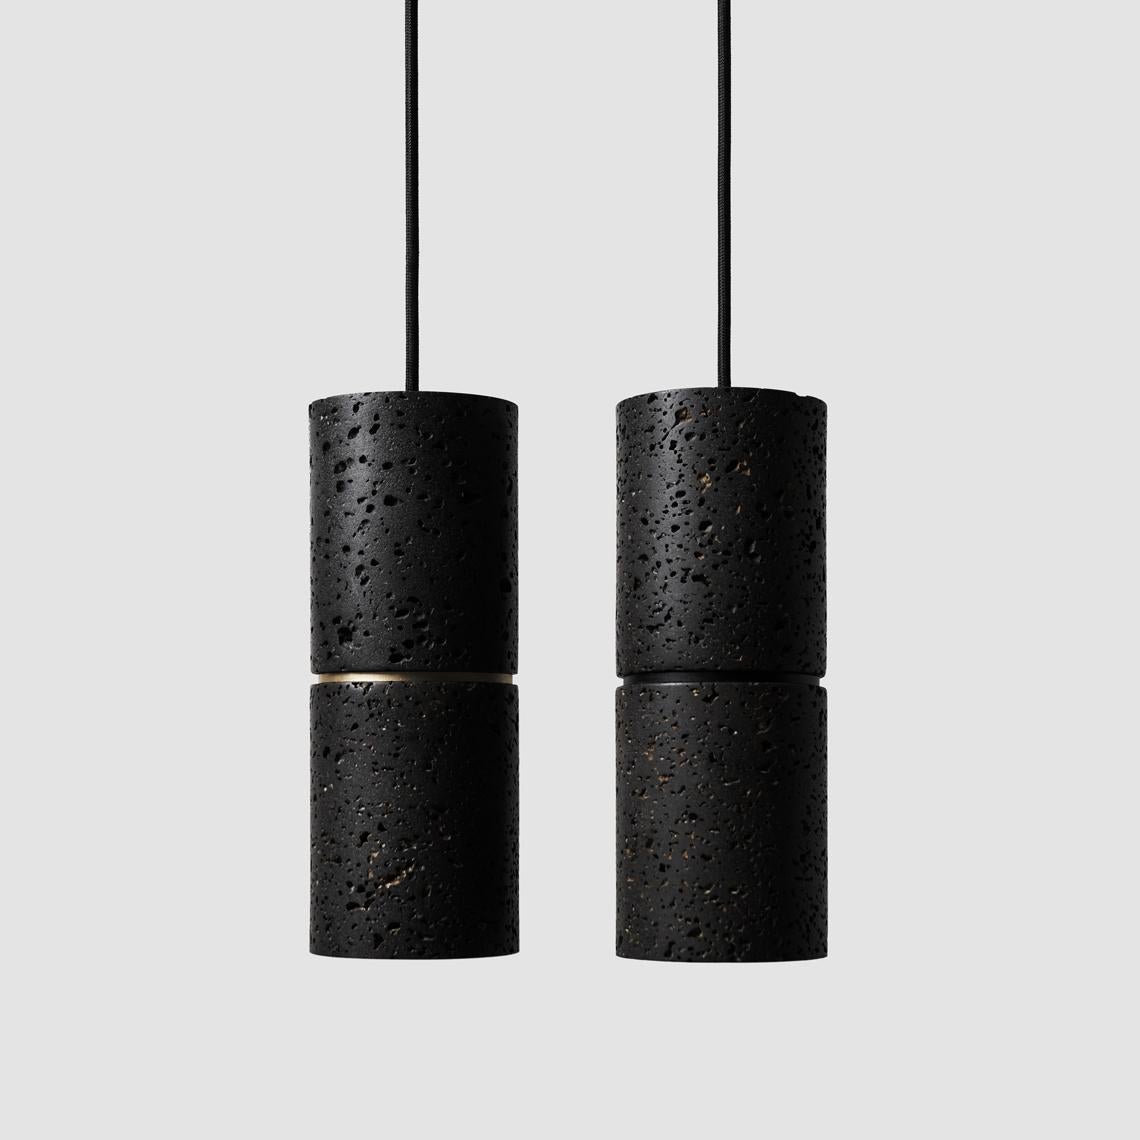 Hängeleuchte 'RI' von Buzao x Bentu Design. 
Erhältlich in schwarzem Lavastein und weißem Marmor.

(einzeln erhältlich)

26,5 cm hoch; 10 cm Durchmesser
Kabel: 2 Meter schwarz (einstellbar)

Ausführung in Messing (gold) oder Aluminium